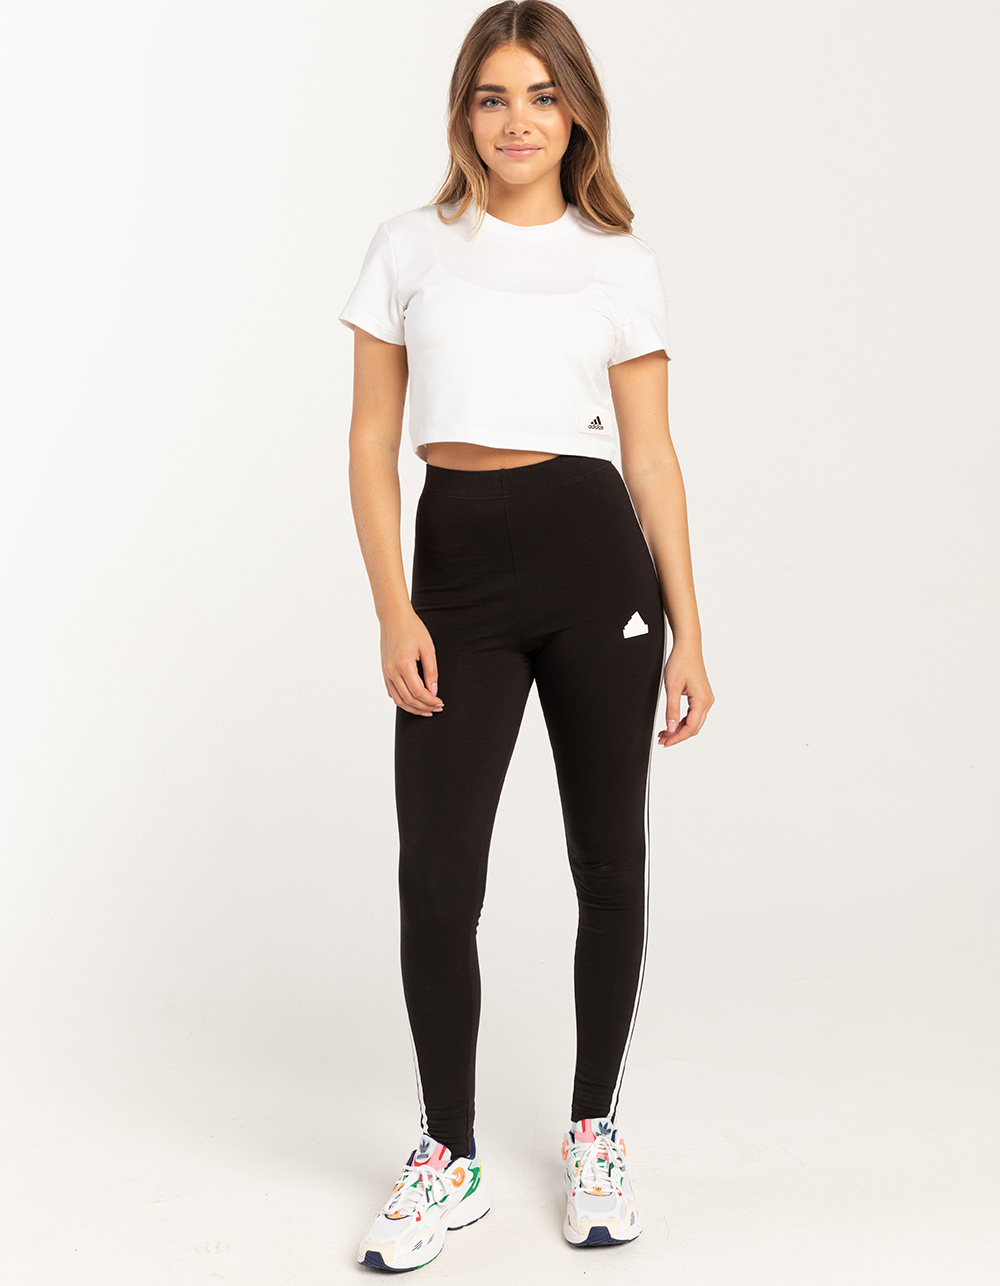 NEW Adidas Women's Trefoil 3 Stripe Logo Leggings - Black - XS